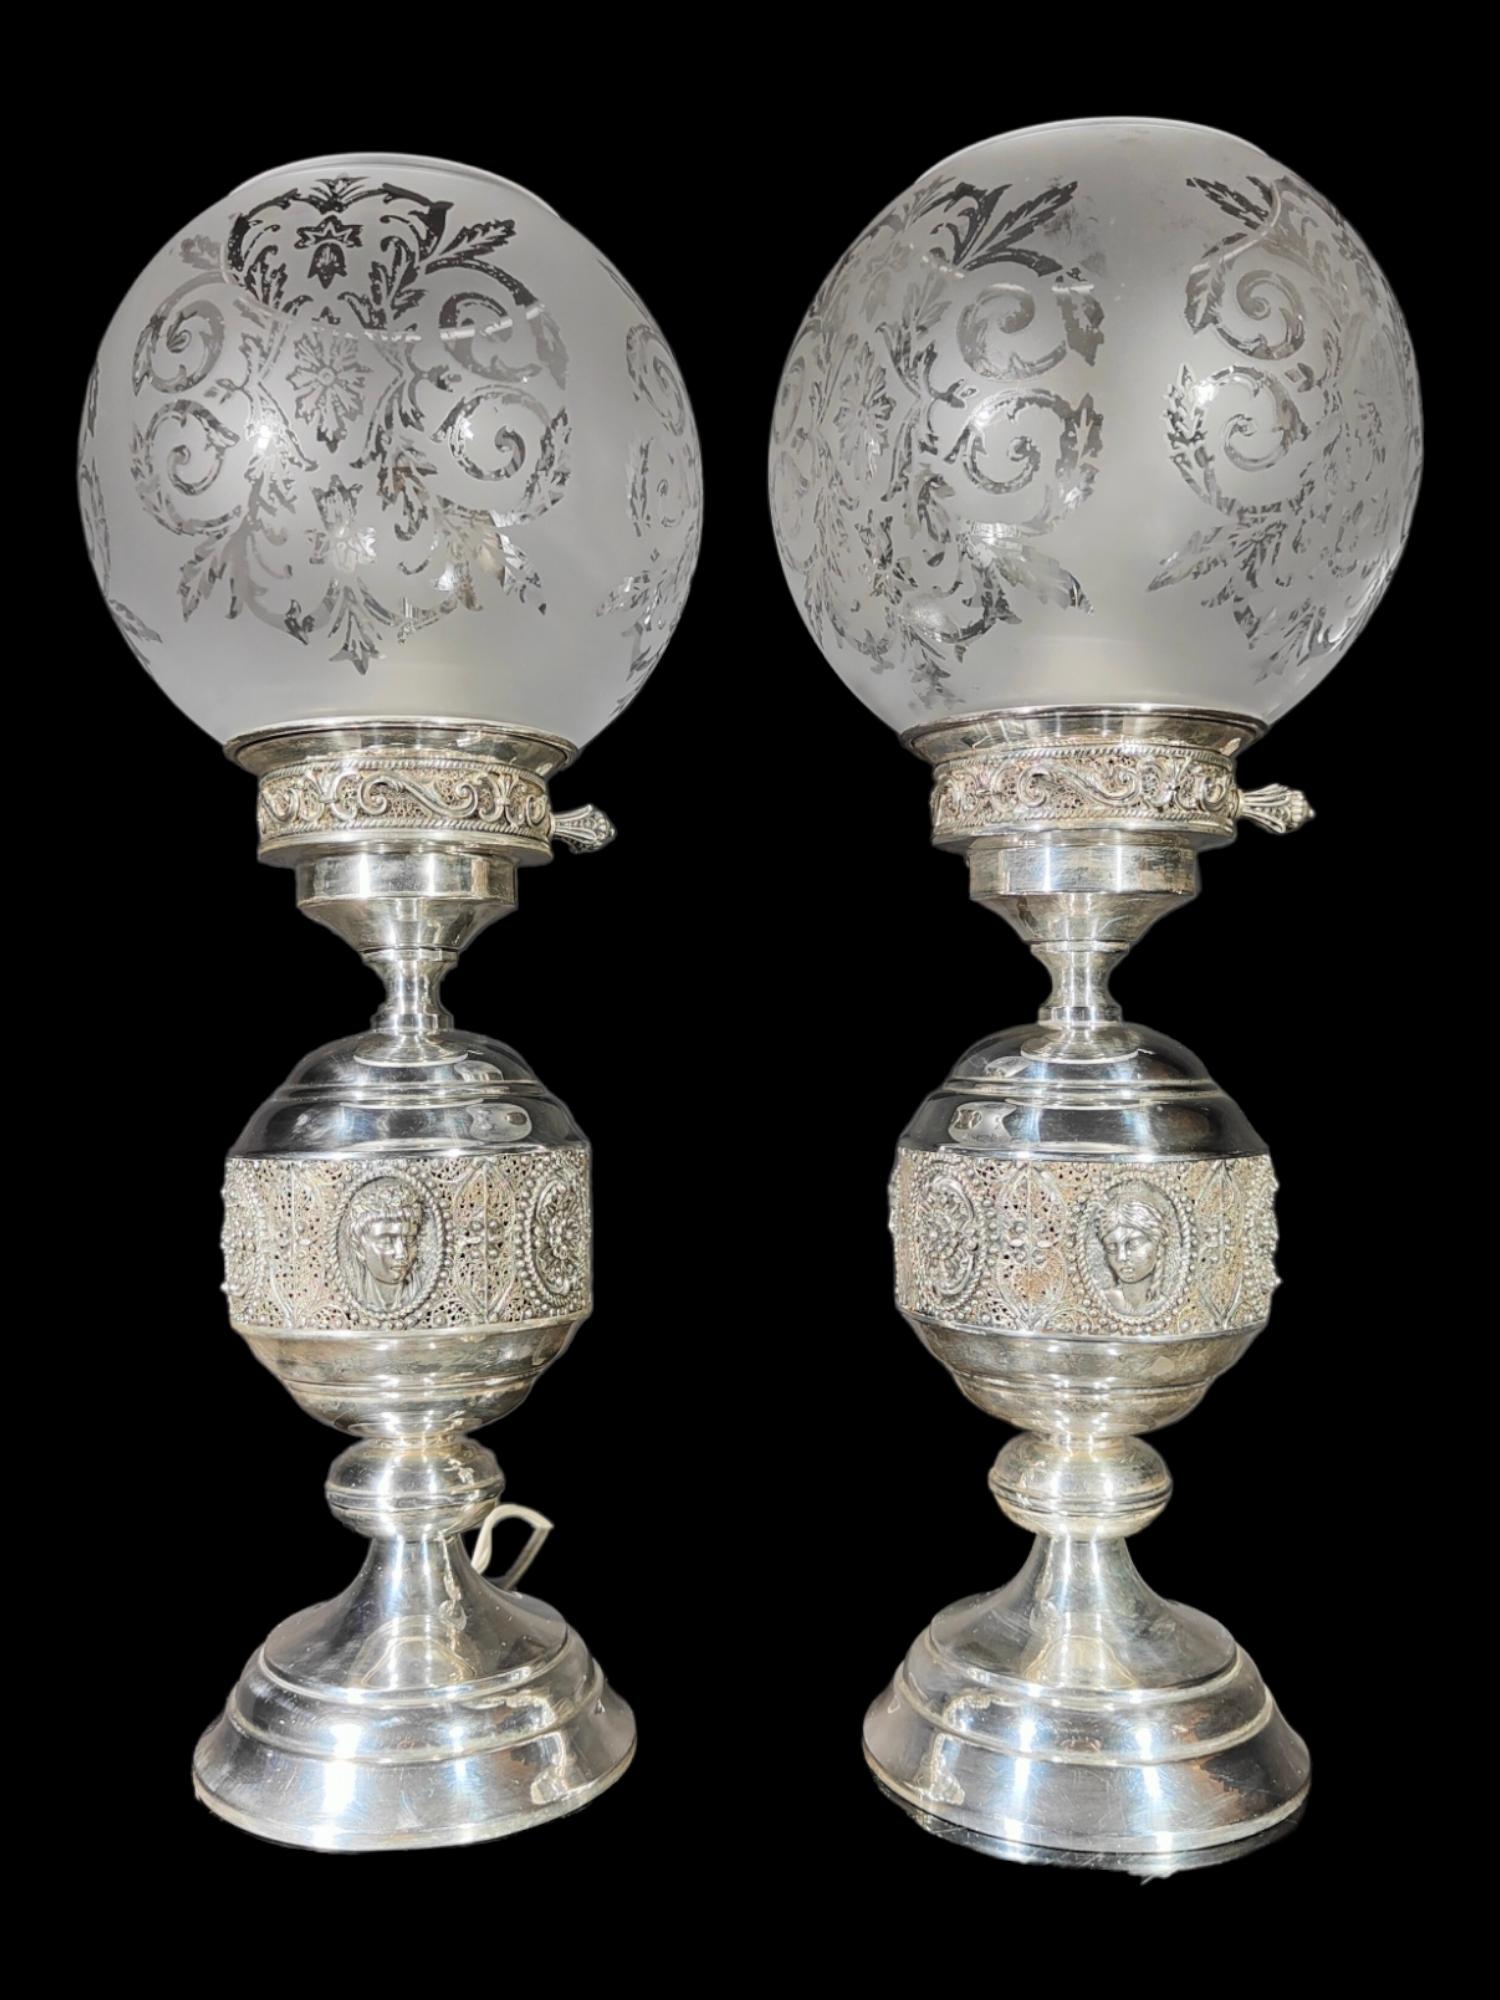 Paar Lampen aus Sterlingsilber mit Filigran
Elegantes Lampenpaar aus massivem Silber, gearbeitet mit Filegree und Cabochons klassischer römischer Büsten. Bei einer der Lampen ist der Glaskolben beschädigt. Siehe Fotos-es kann durch andere Ihrer